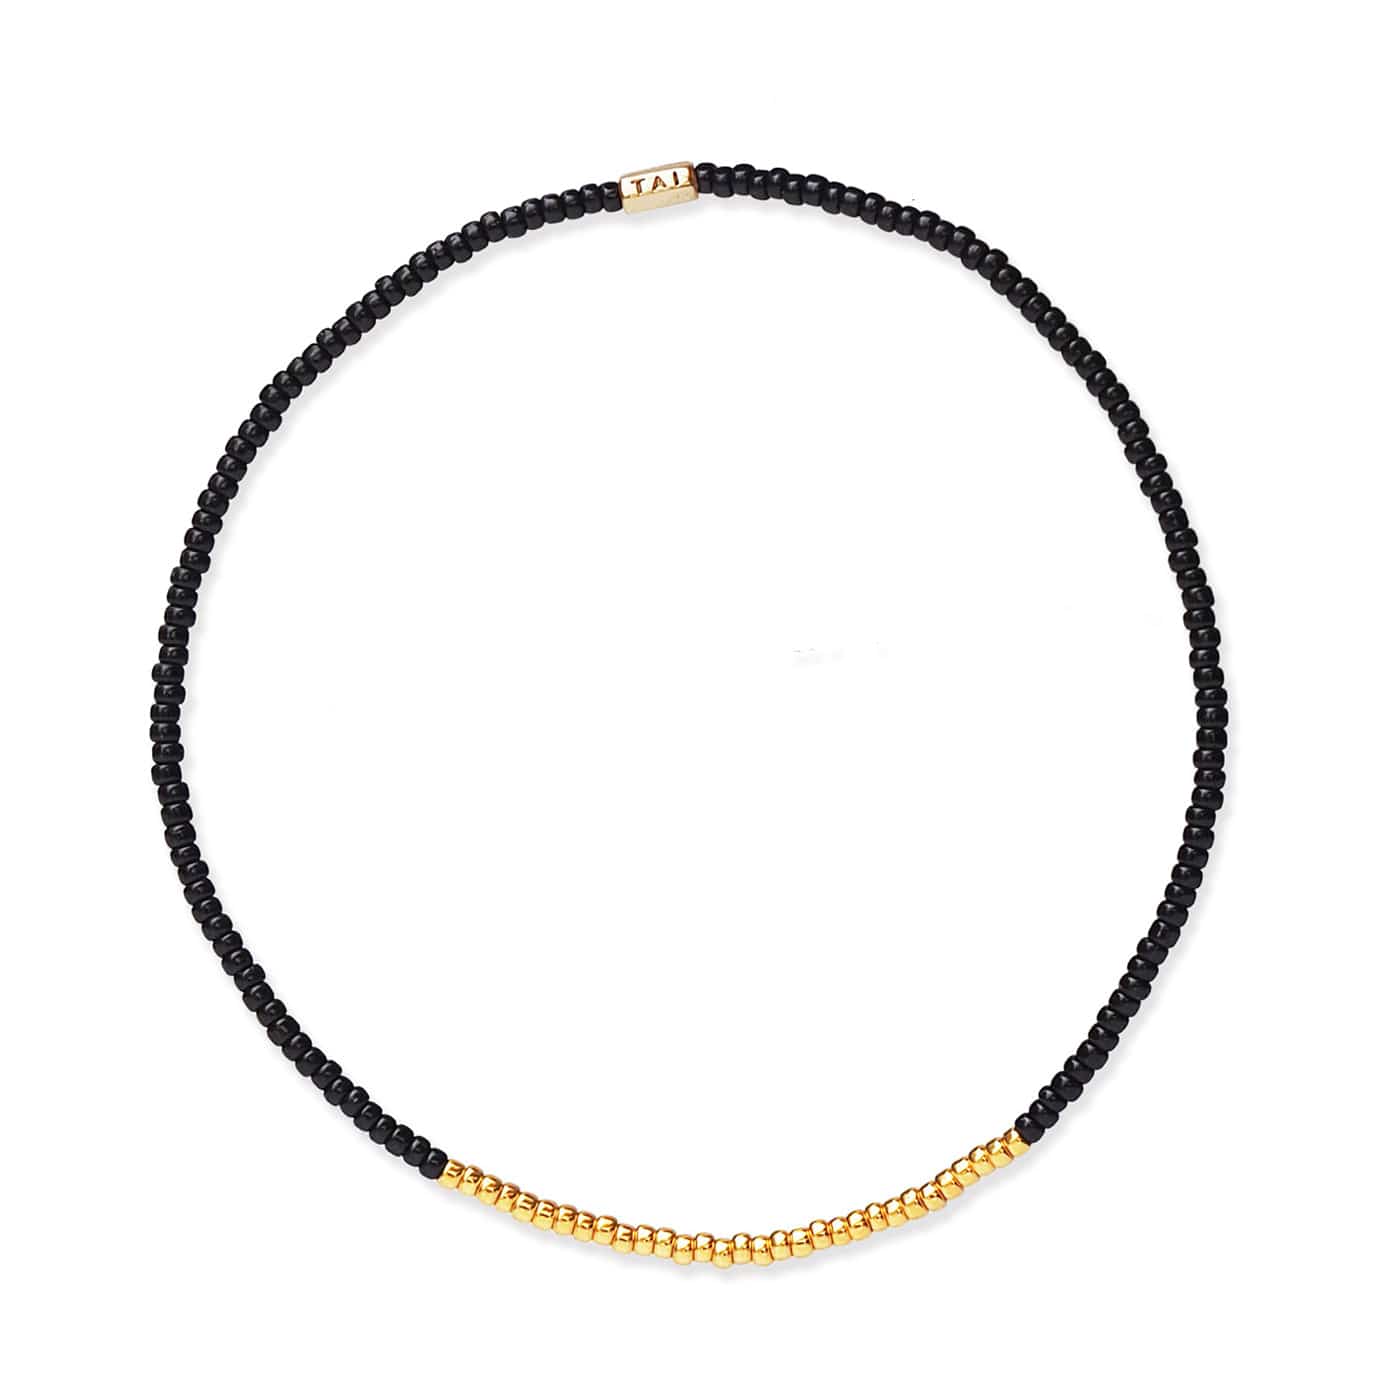 TAI JEWELRY Bracelet BLACK Praew Bracelet Beaded With Gold Accents